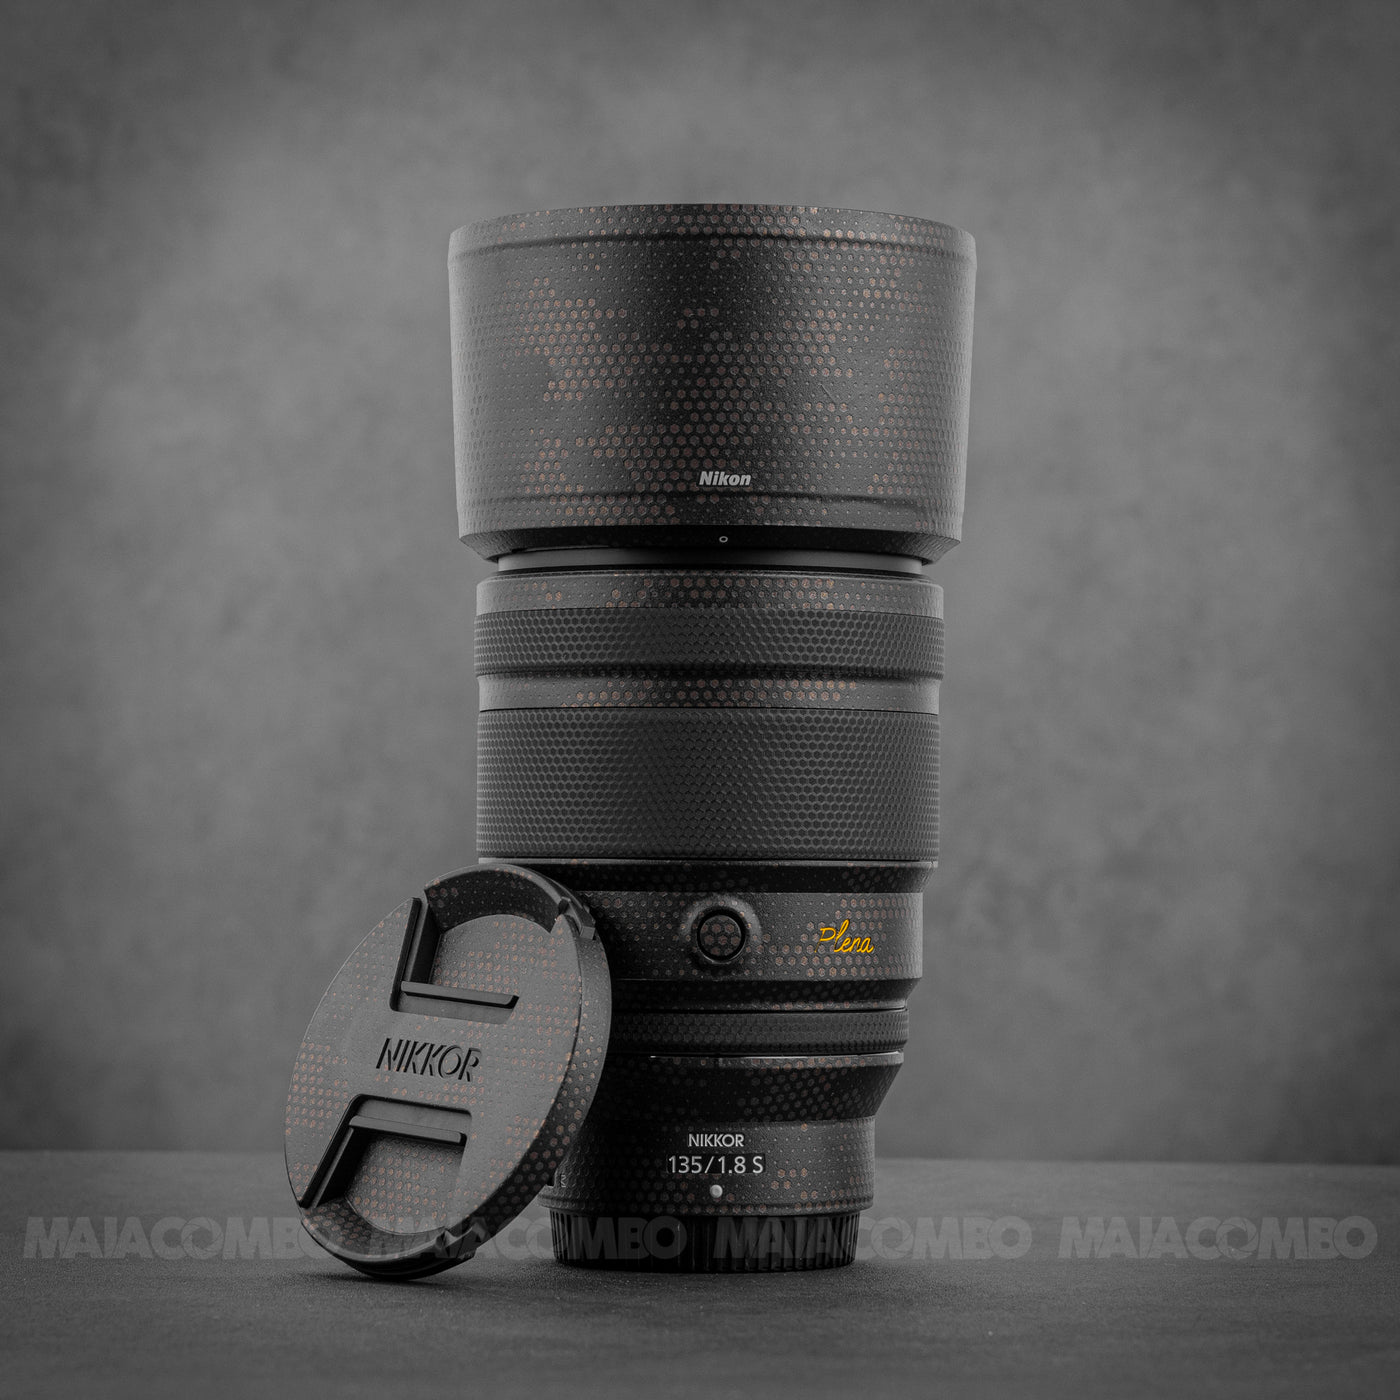 Nikon Z 135mm F1.8 S Plena Lens Skin